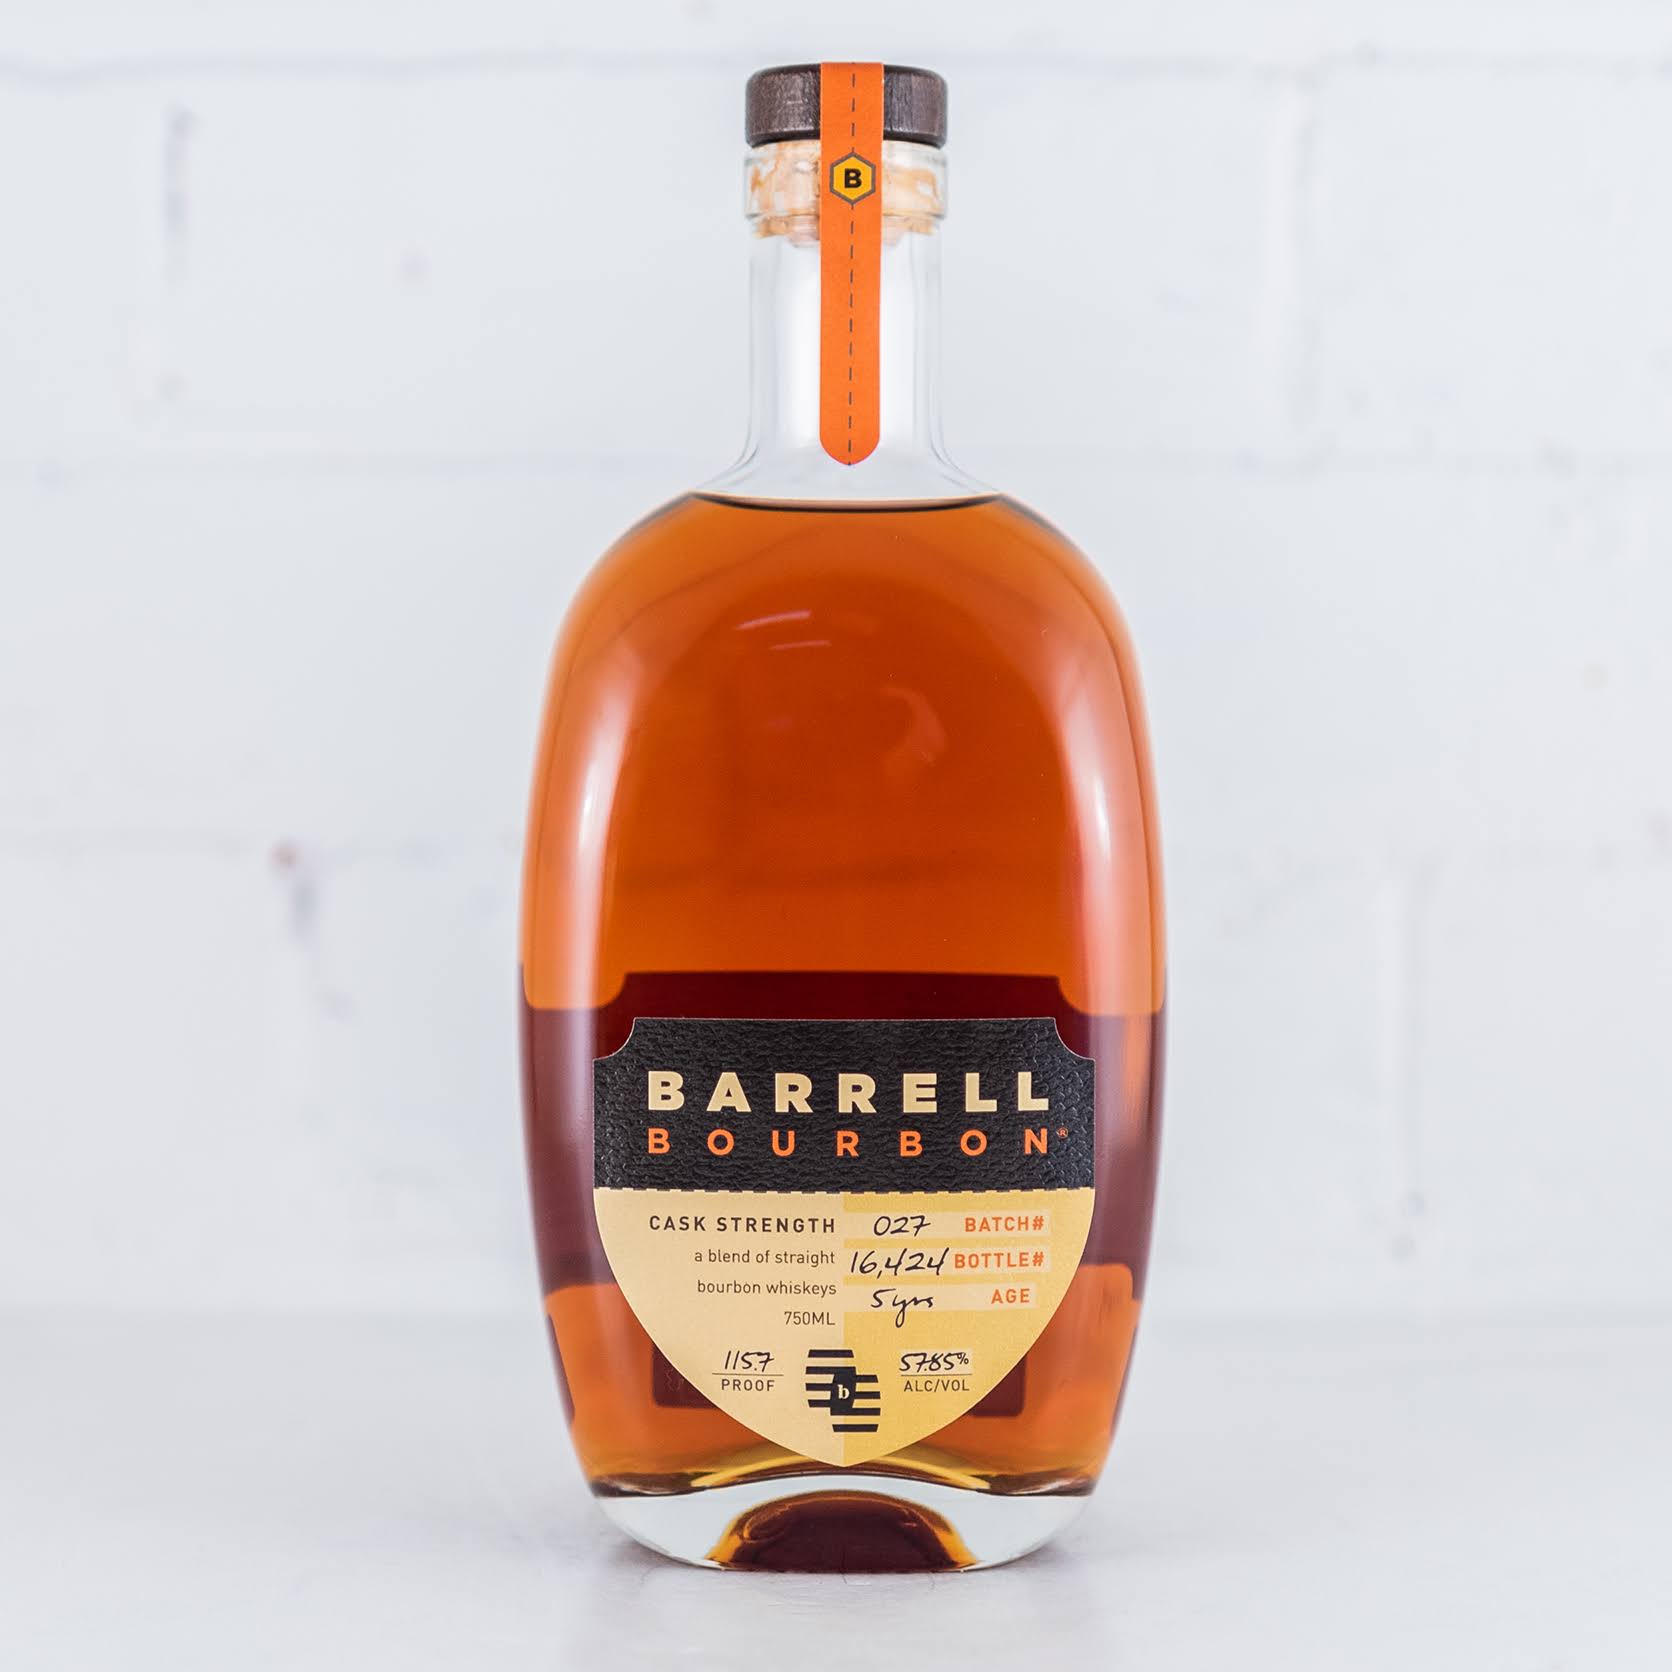 Barrell Bourbon 027 Batch